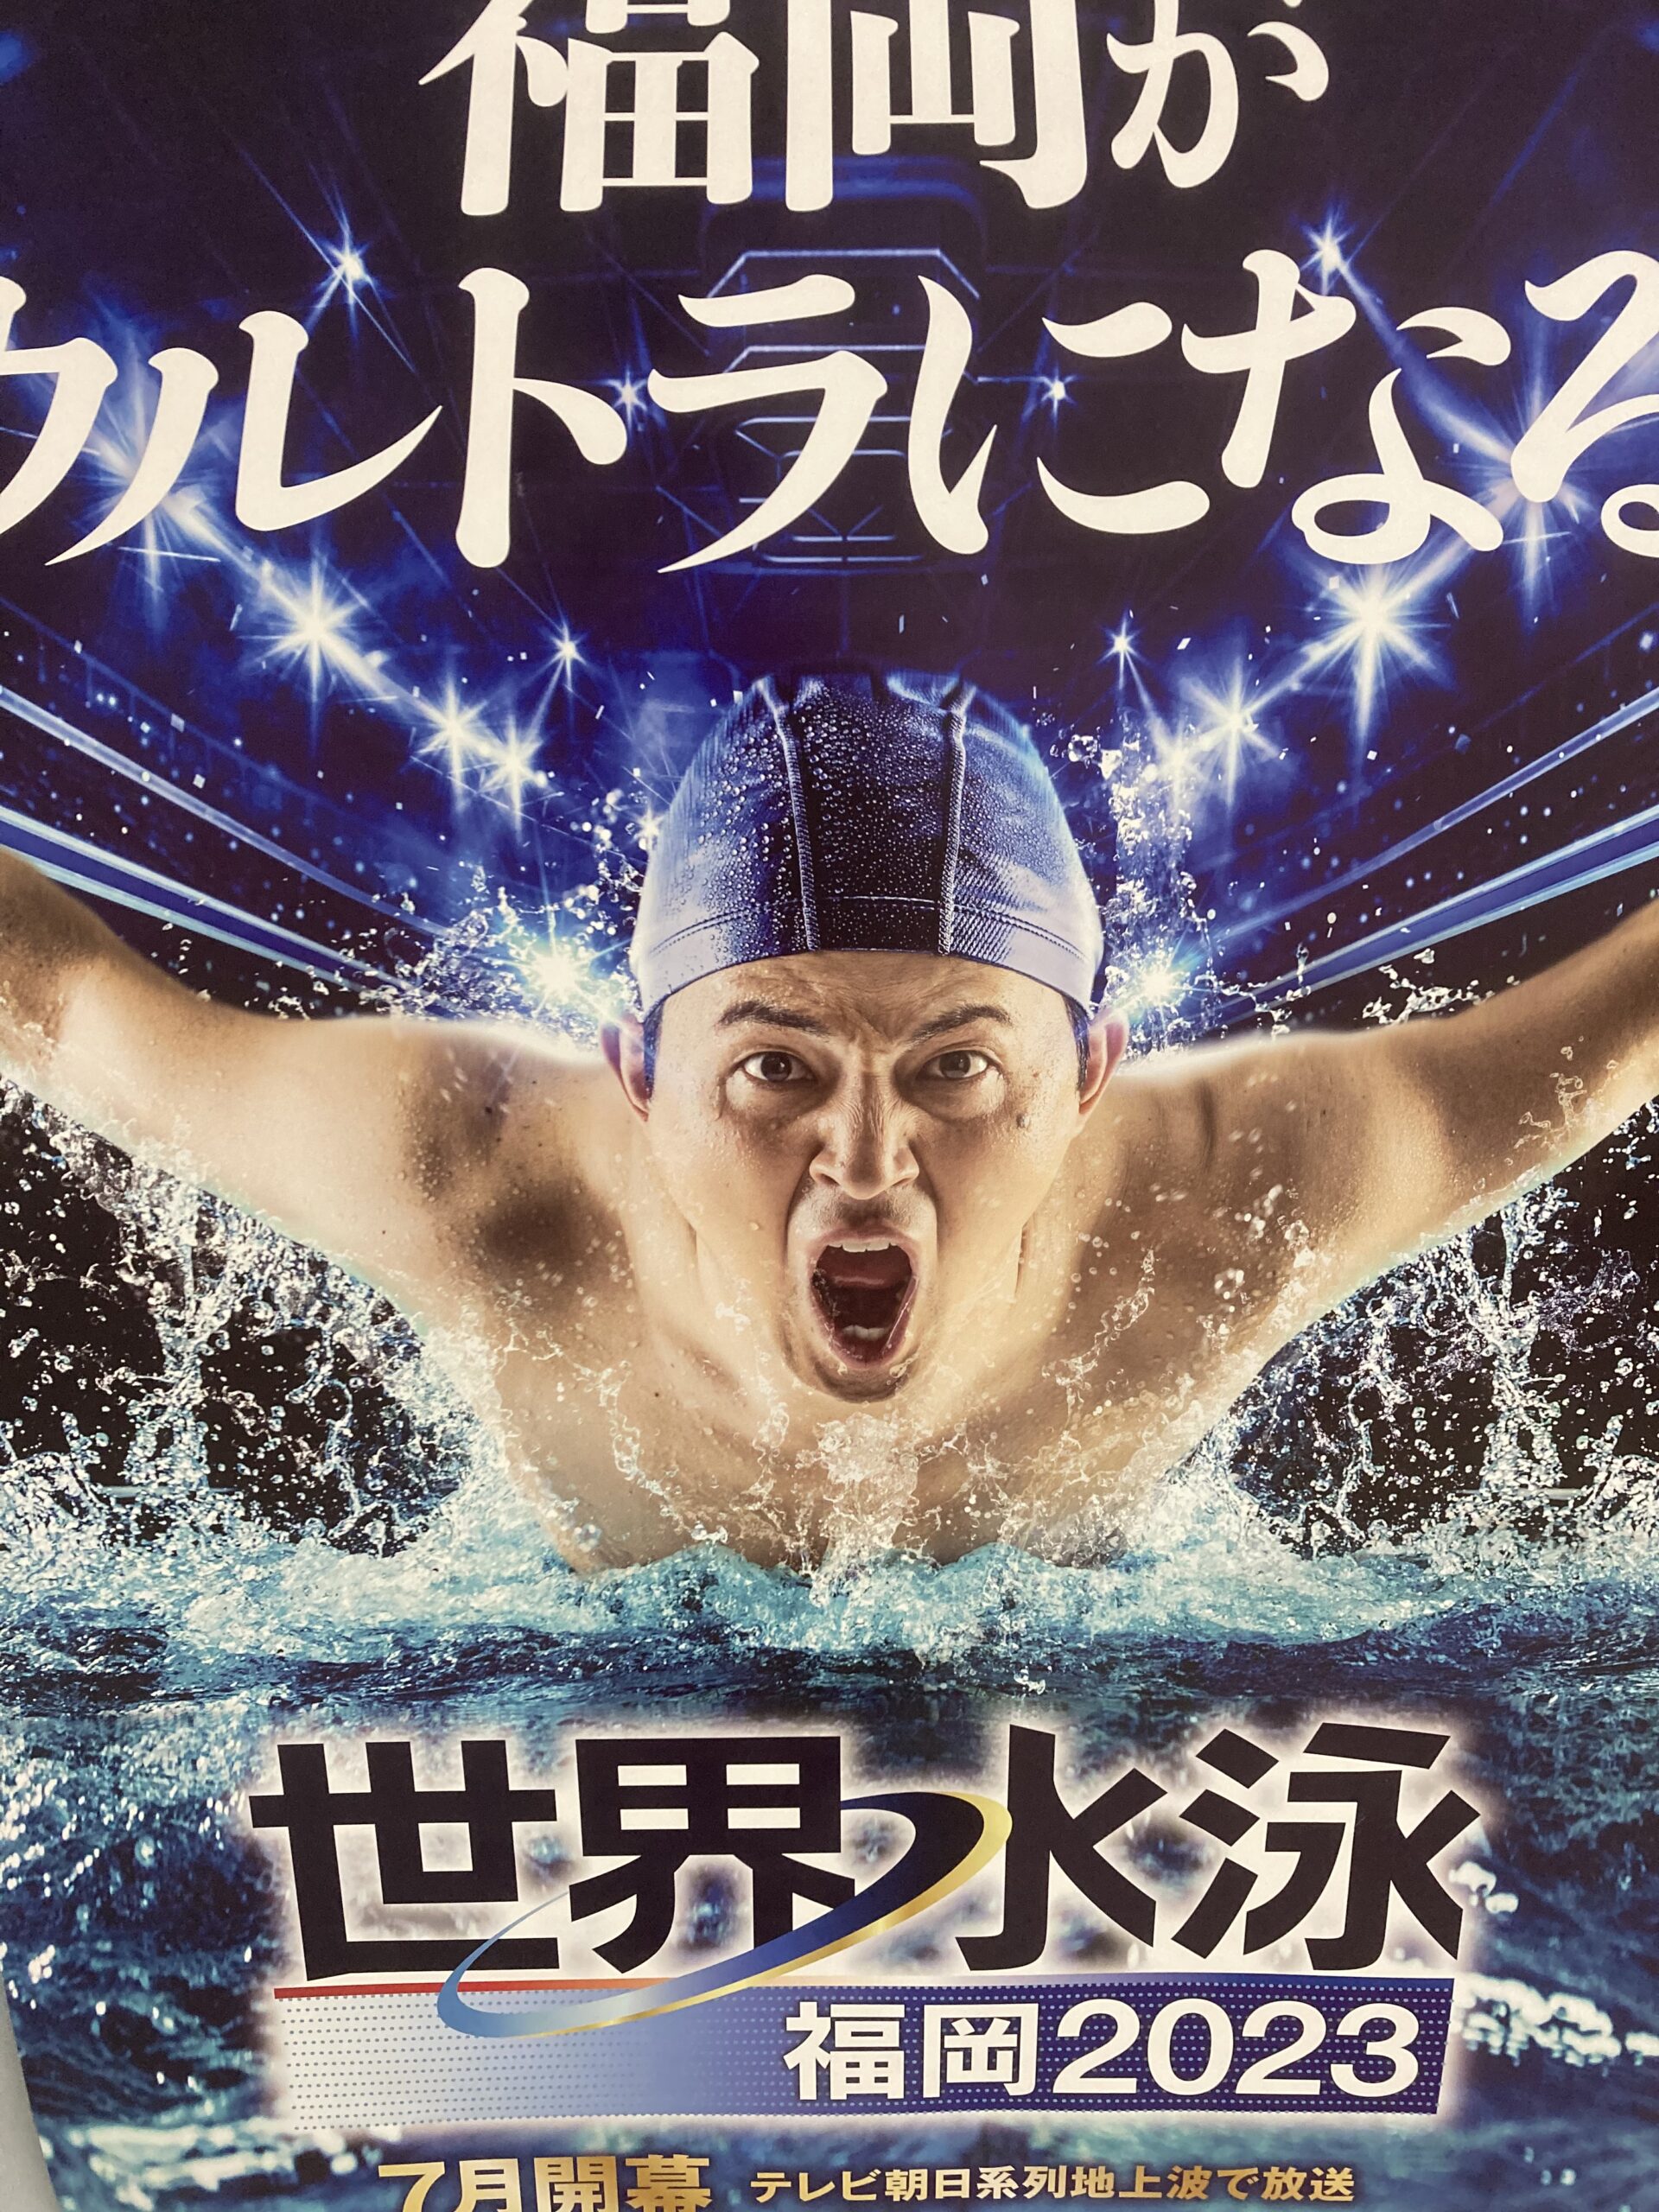 世界水泳選手権 福岡大会 競泳 決勝 | www.bottonificiolozio.it